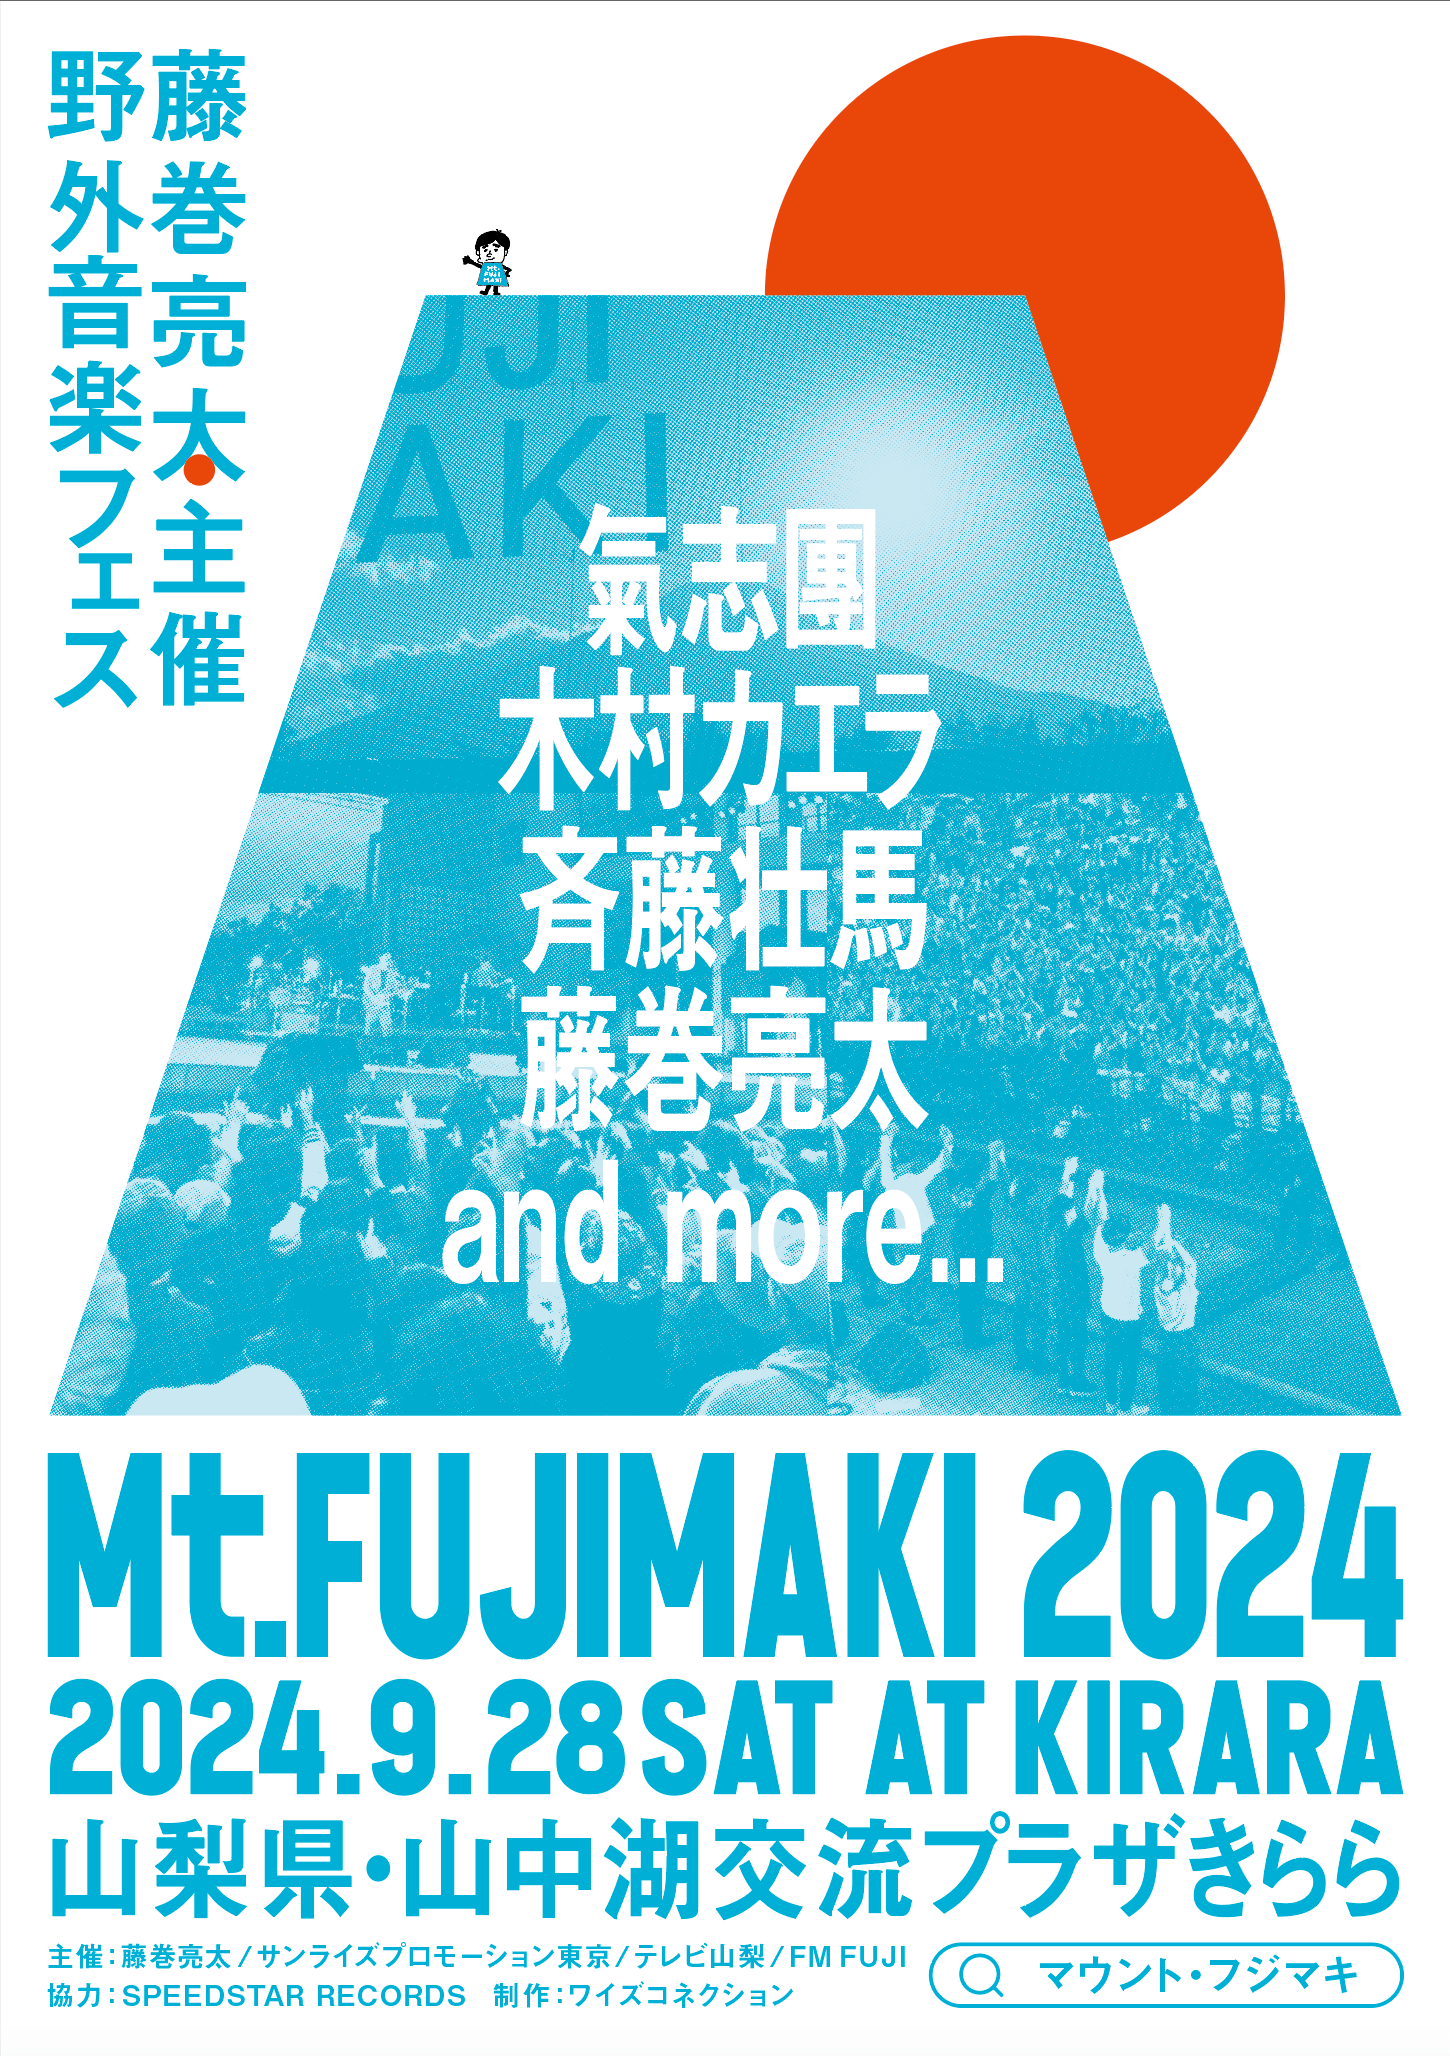 藤巻亮太による野外フェス「Mt.FUJIMAKI」(マウント・フジマキ)